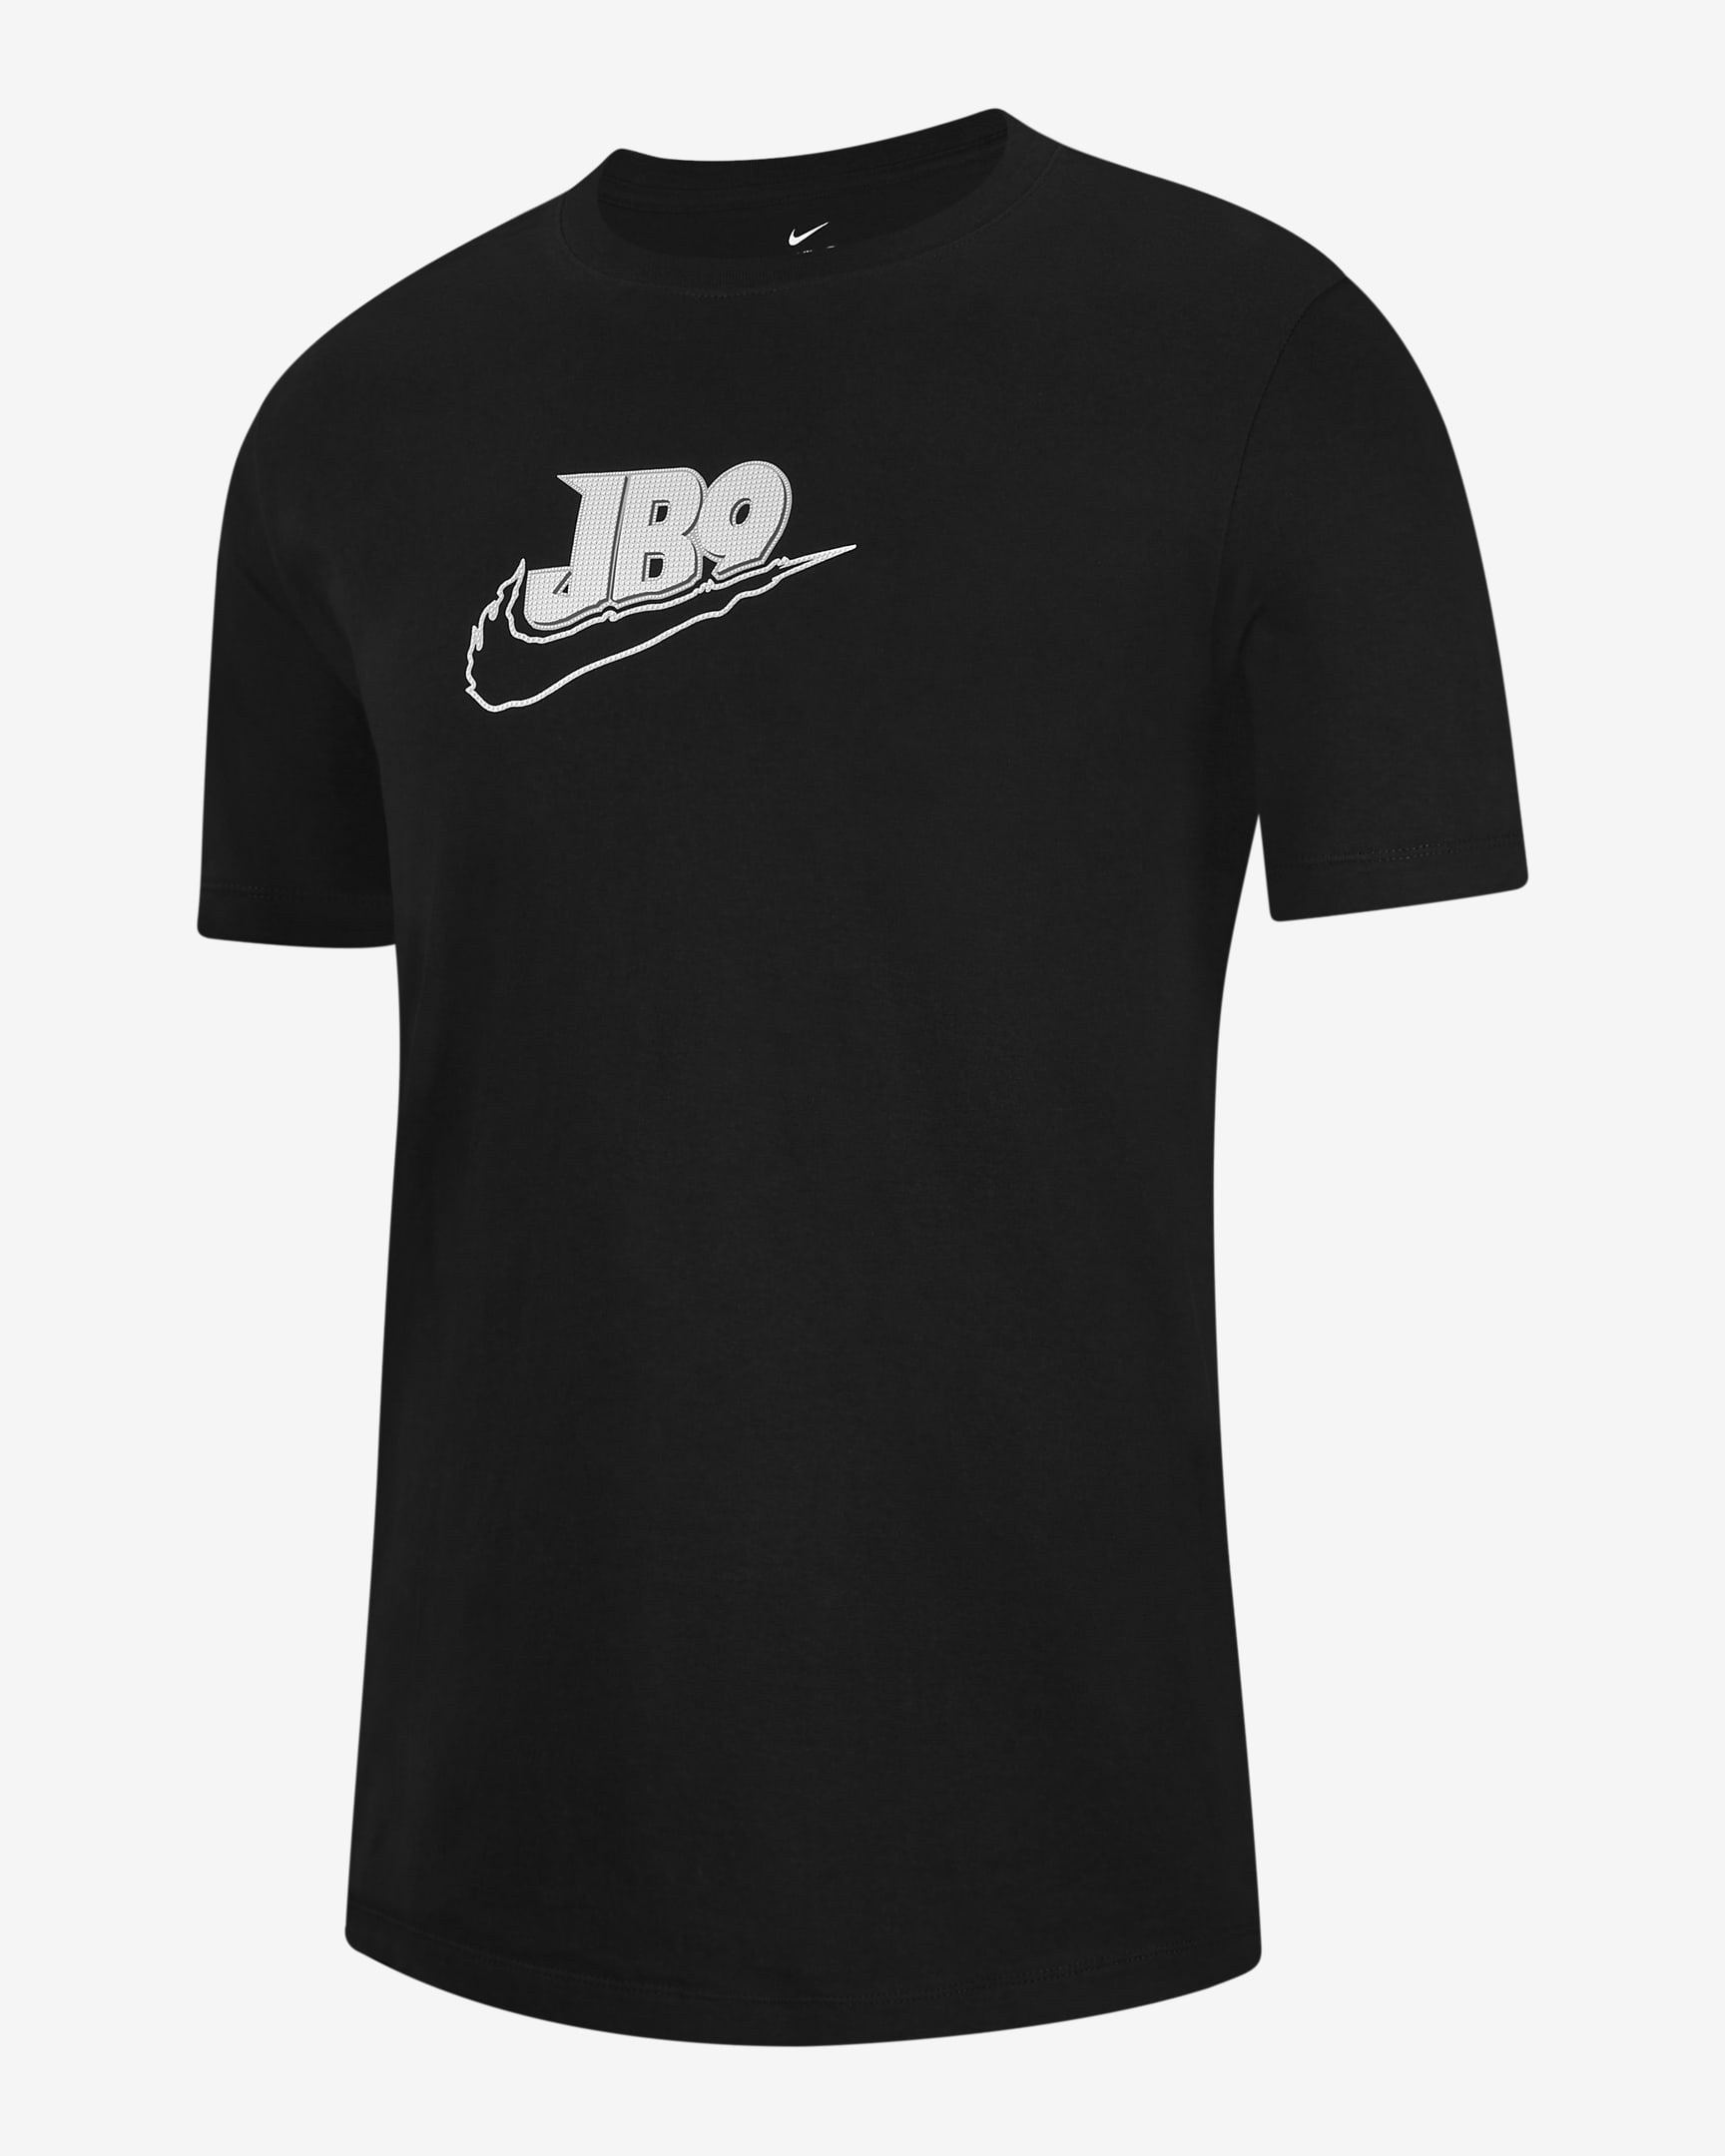 Joe Burrow Men's T-Shirt. Nike.com